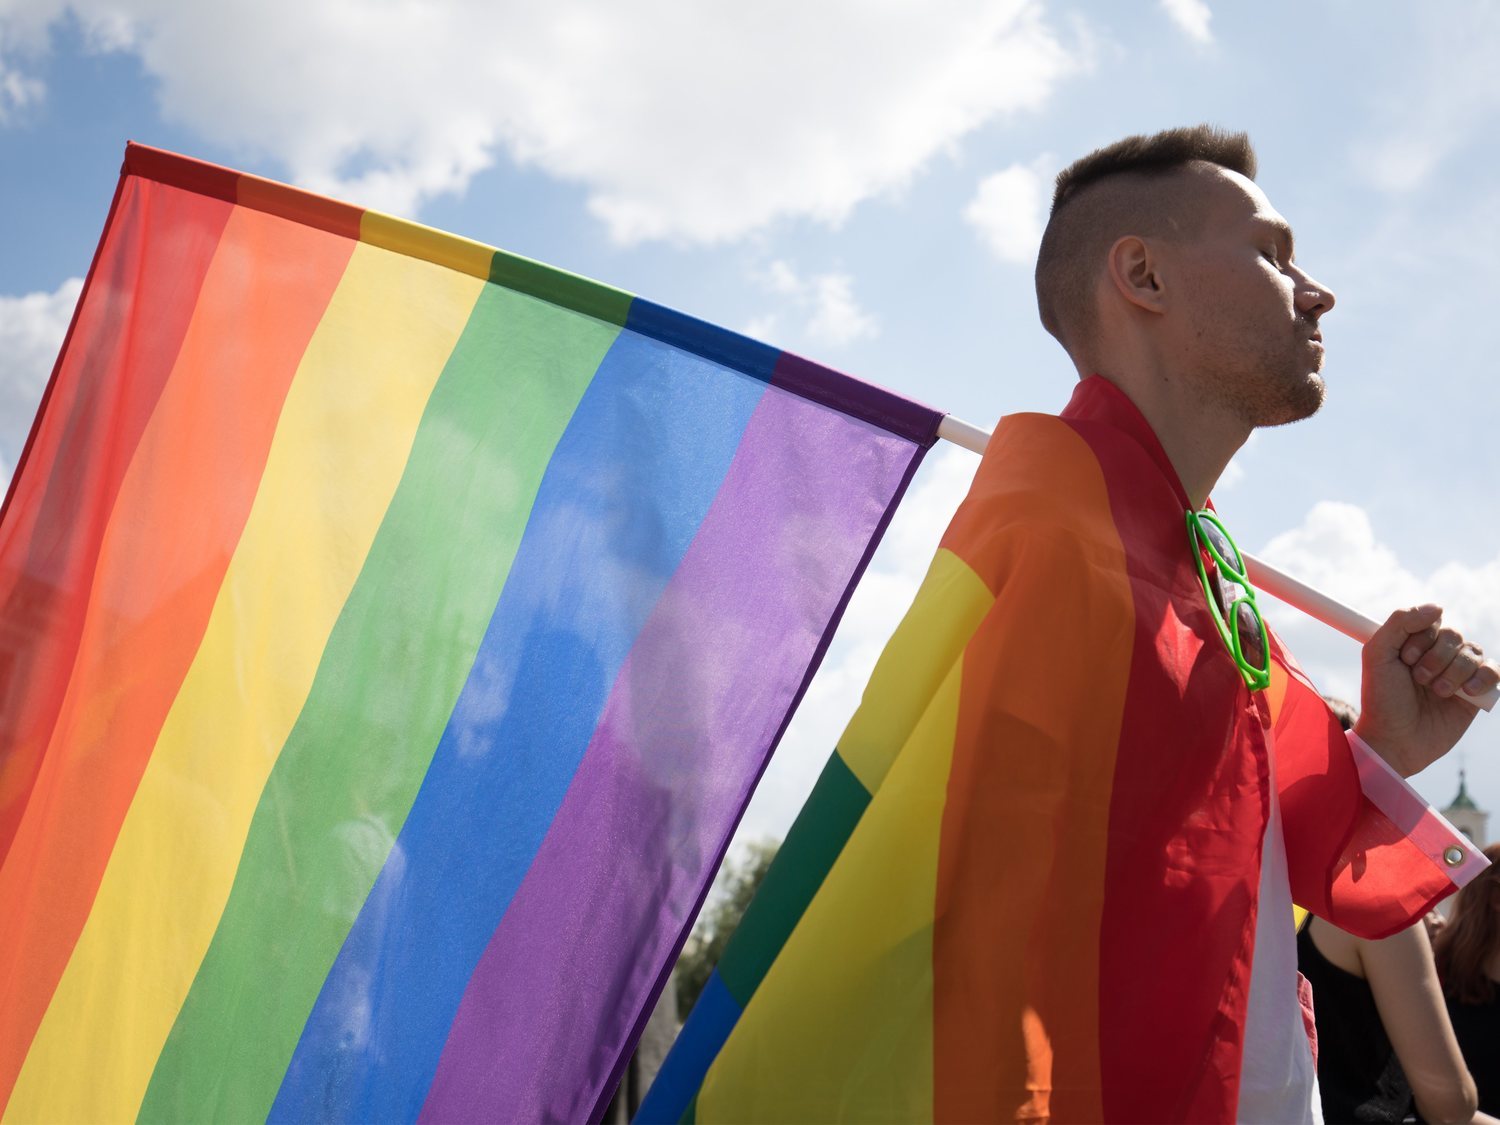 "Los gays adoptan niños para violarlos": la homofobia que gobierna en Polonia